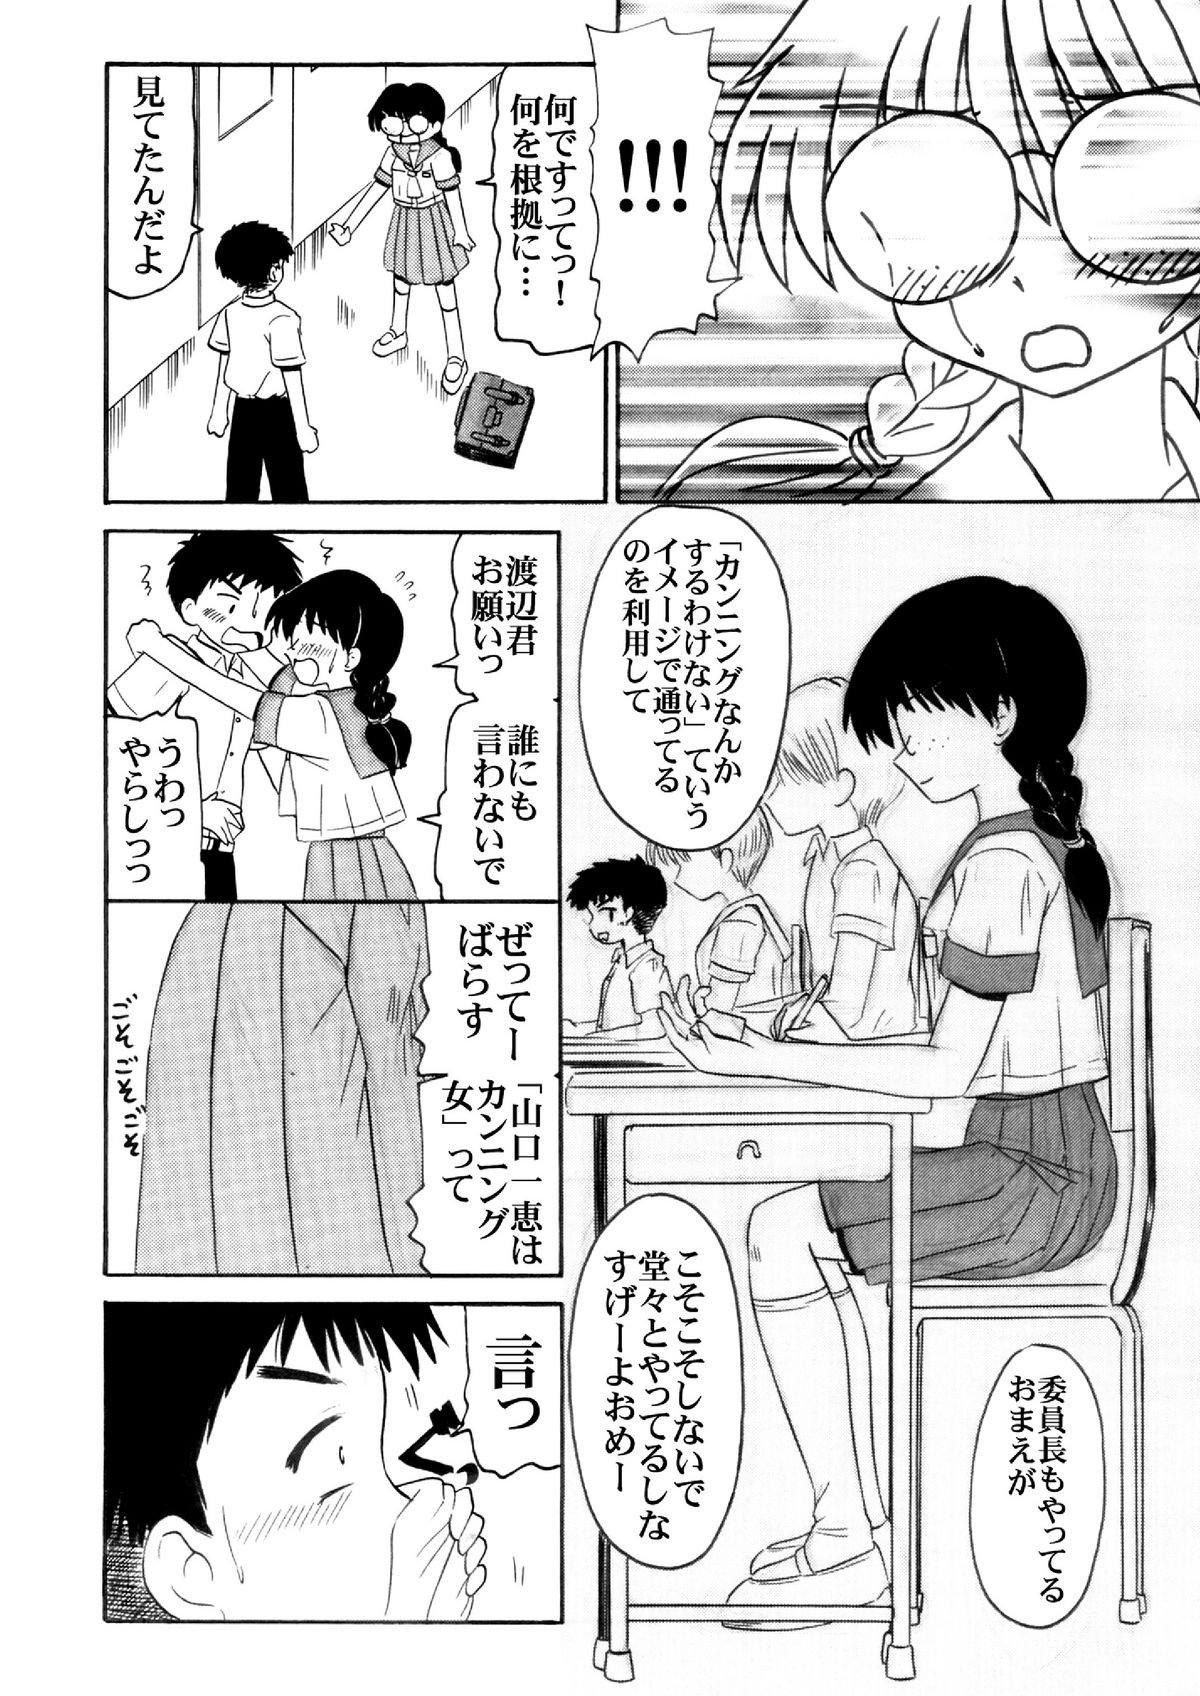 [Salvage Kouboh] Sousaku tamashii 01 page 16 full